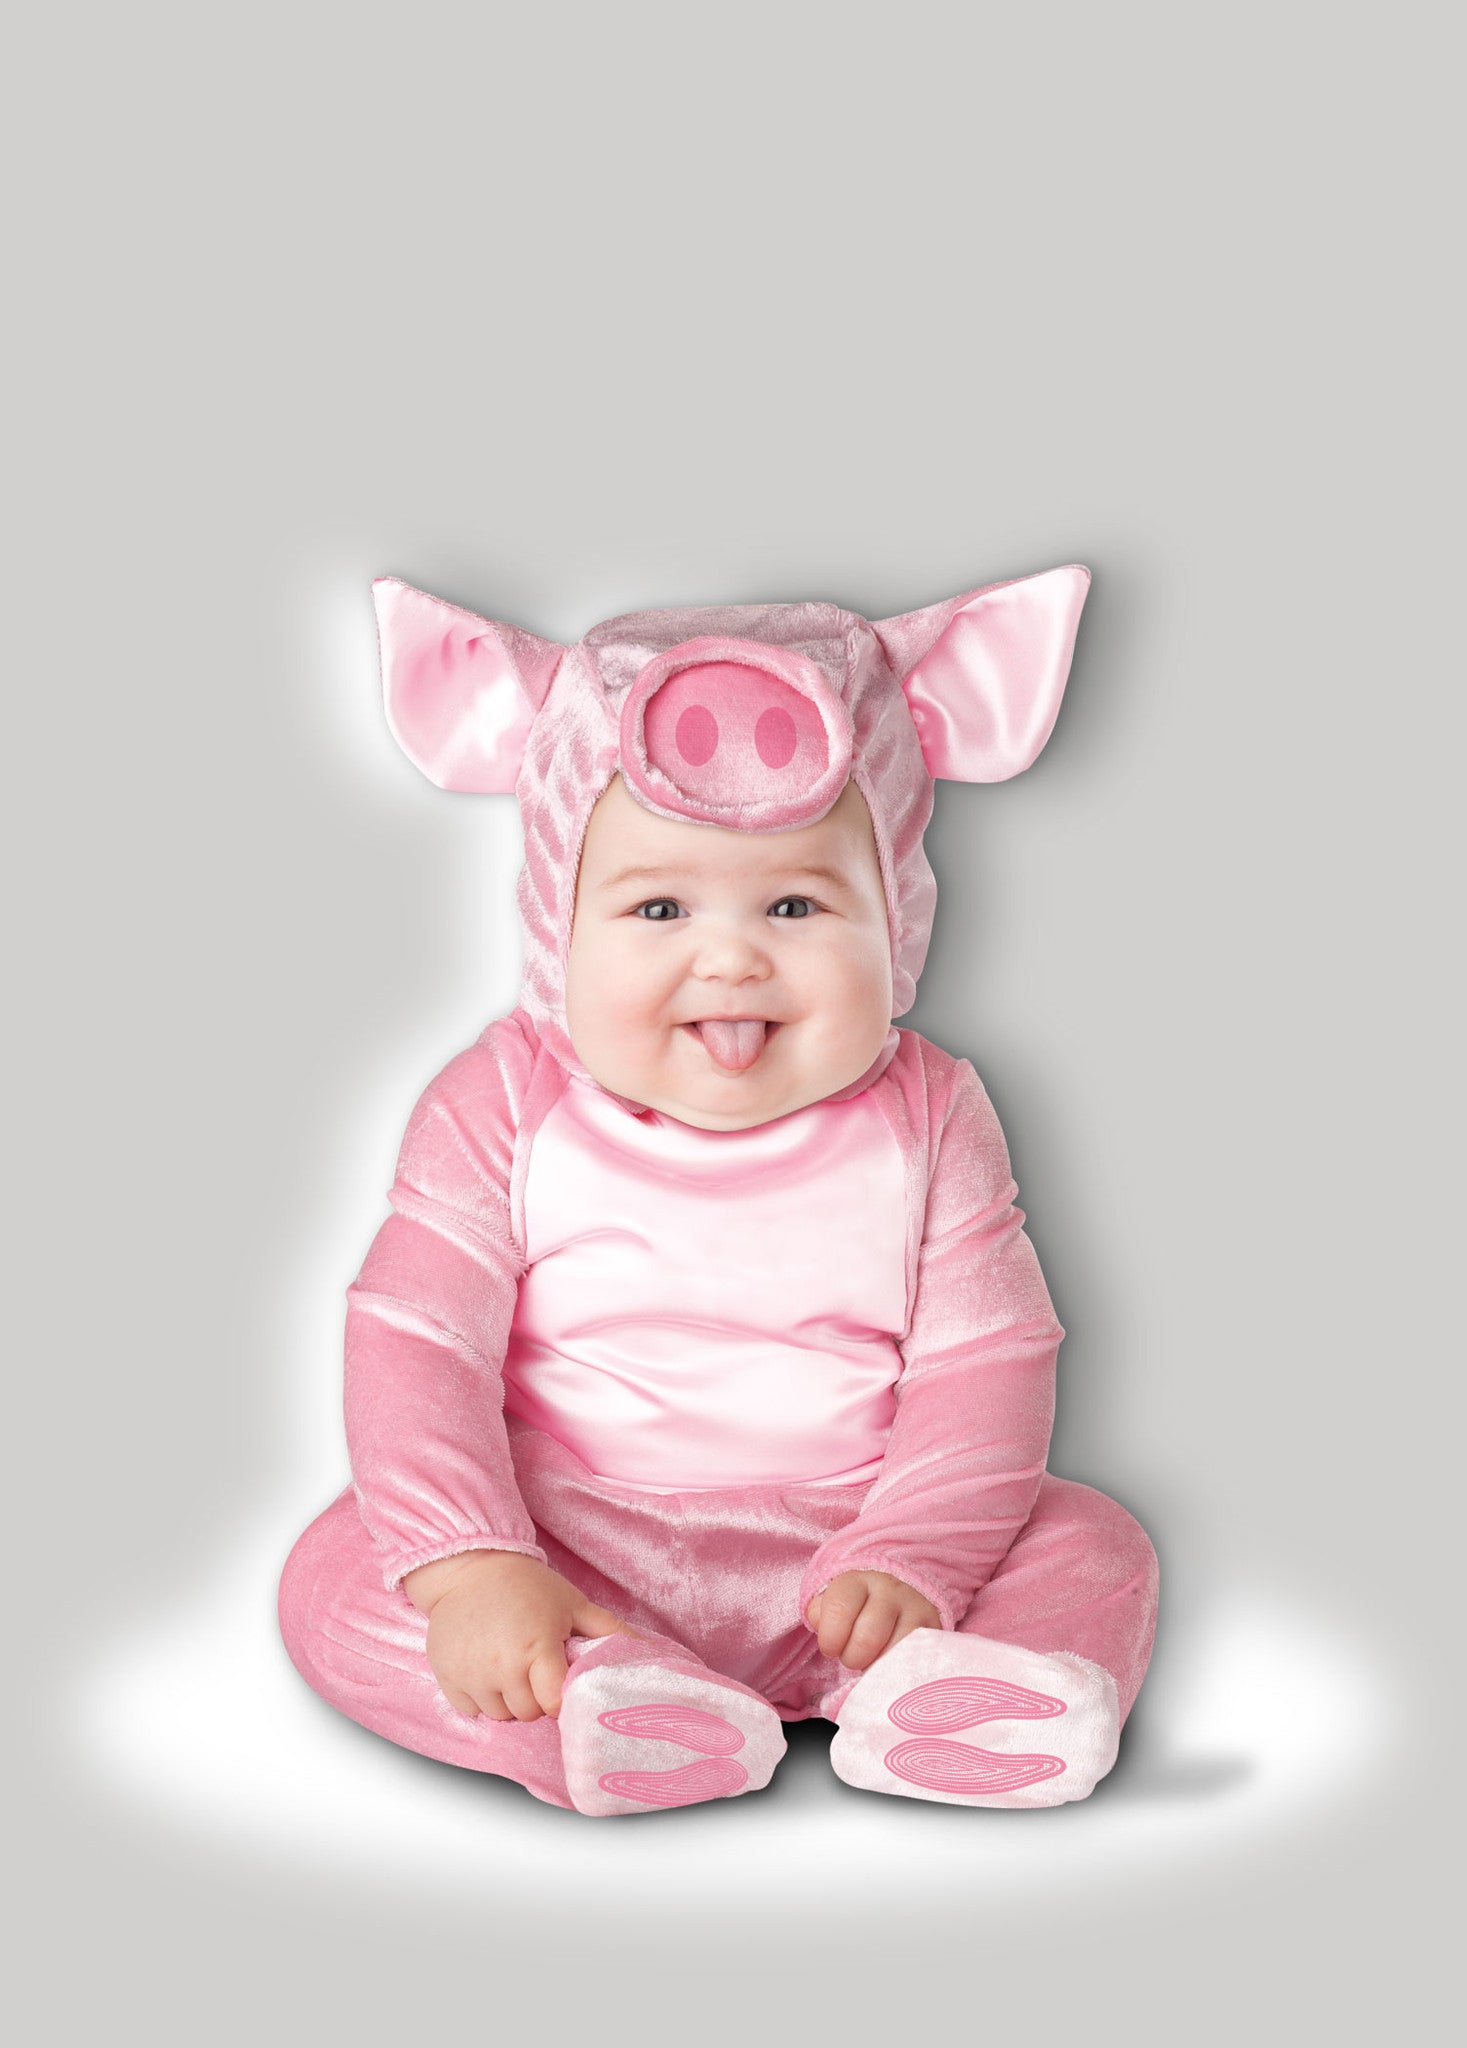 This Lil Piggy - Disfraz infantil de 12 a 18 meses, Rosado